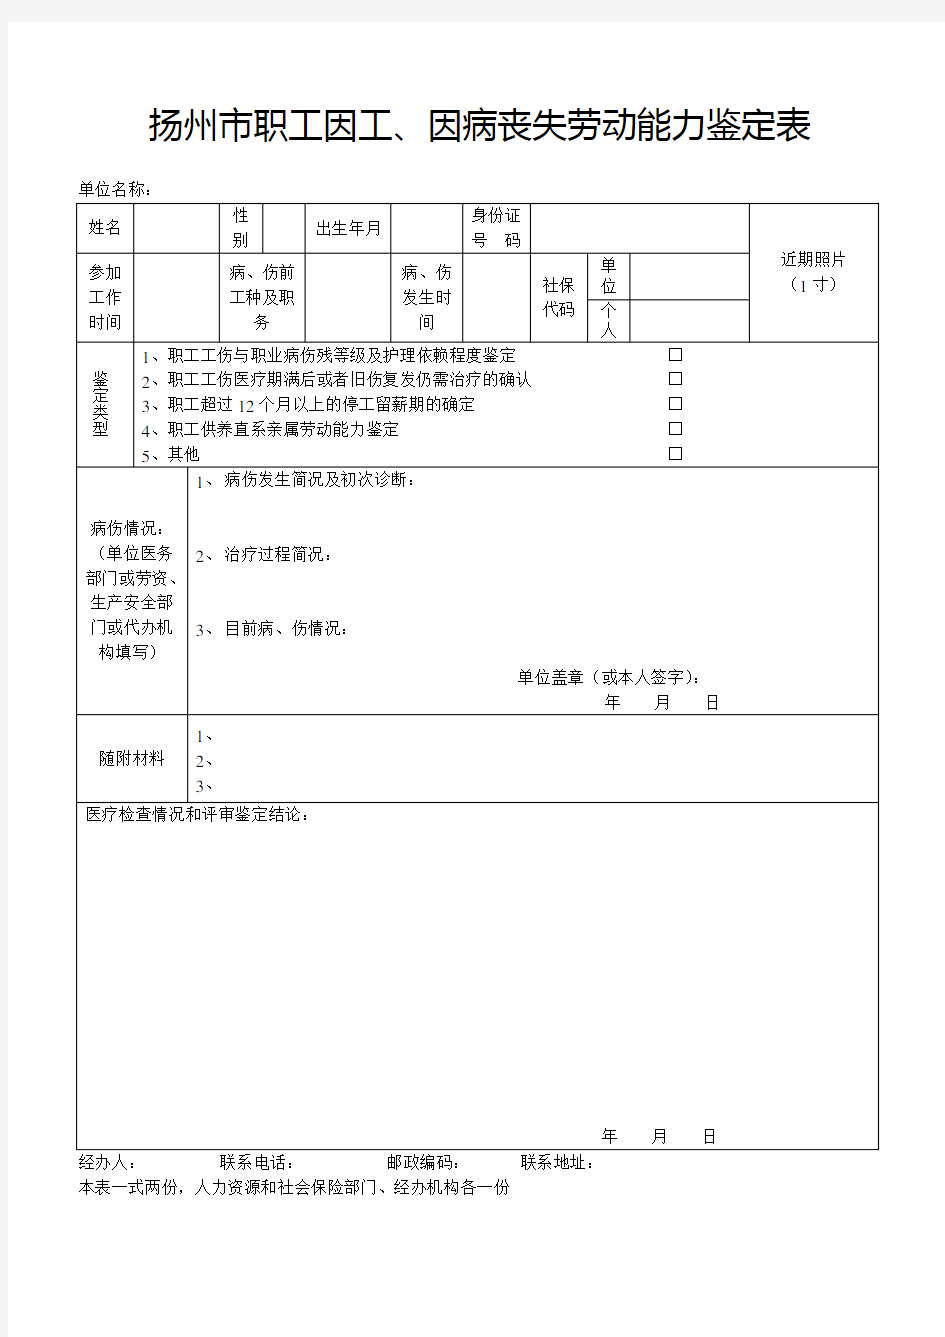 扬州市职工因工、因病丧失劳动能力鉴定表